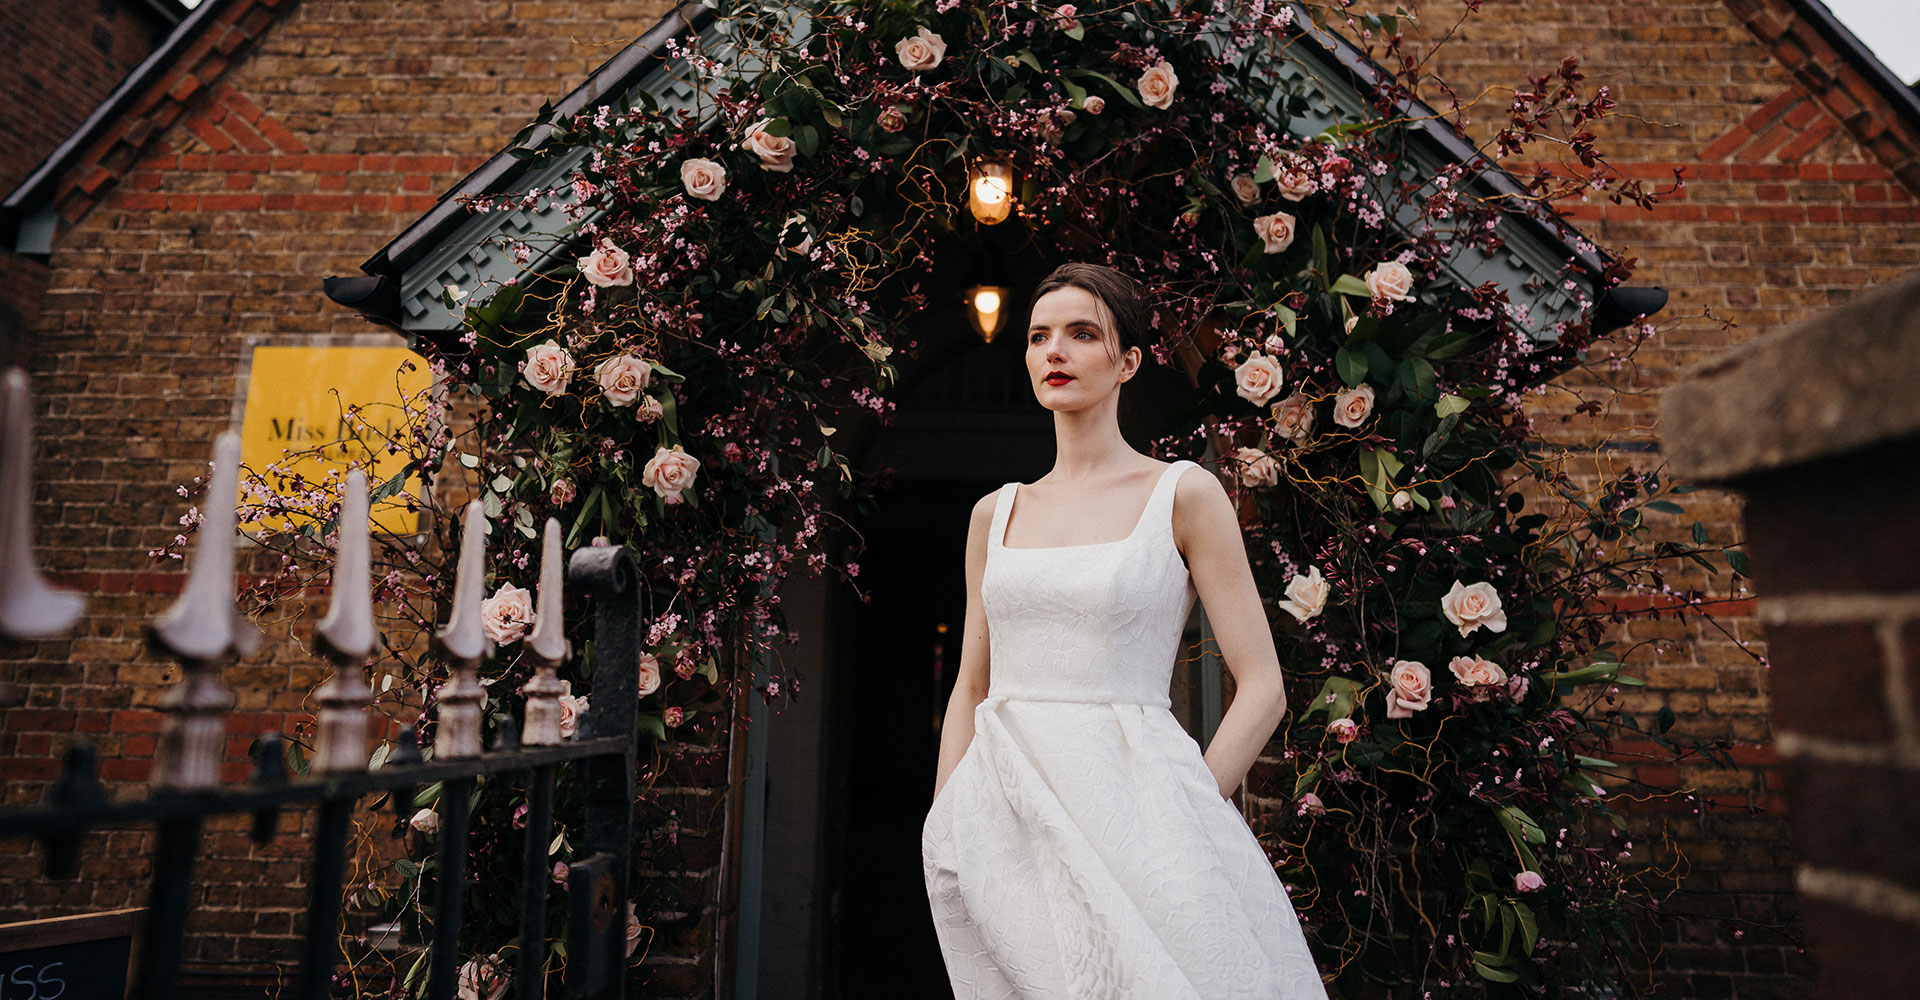 Miss Bush luxury bridal boutique, Surrey and London